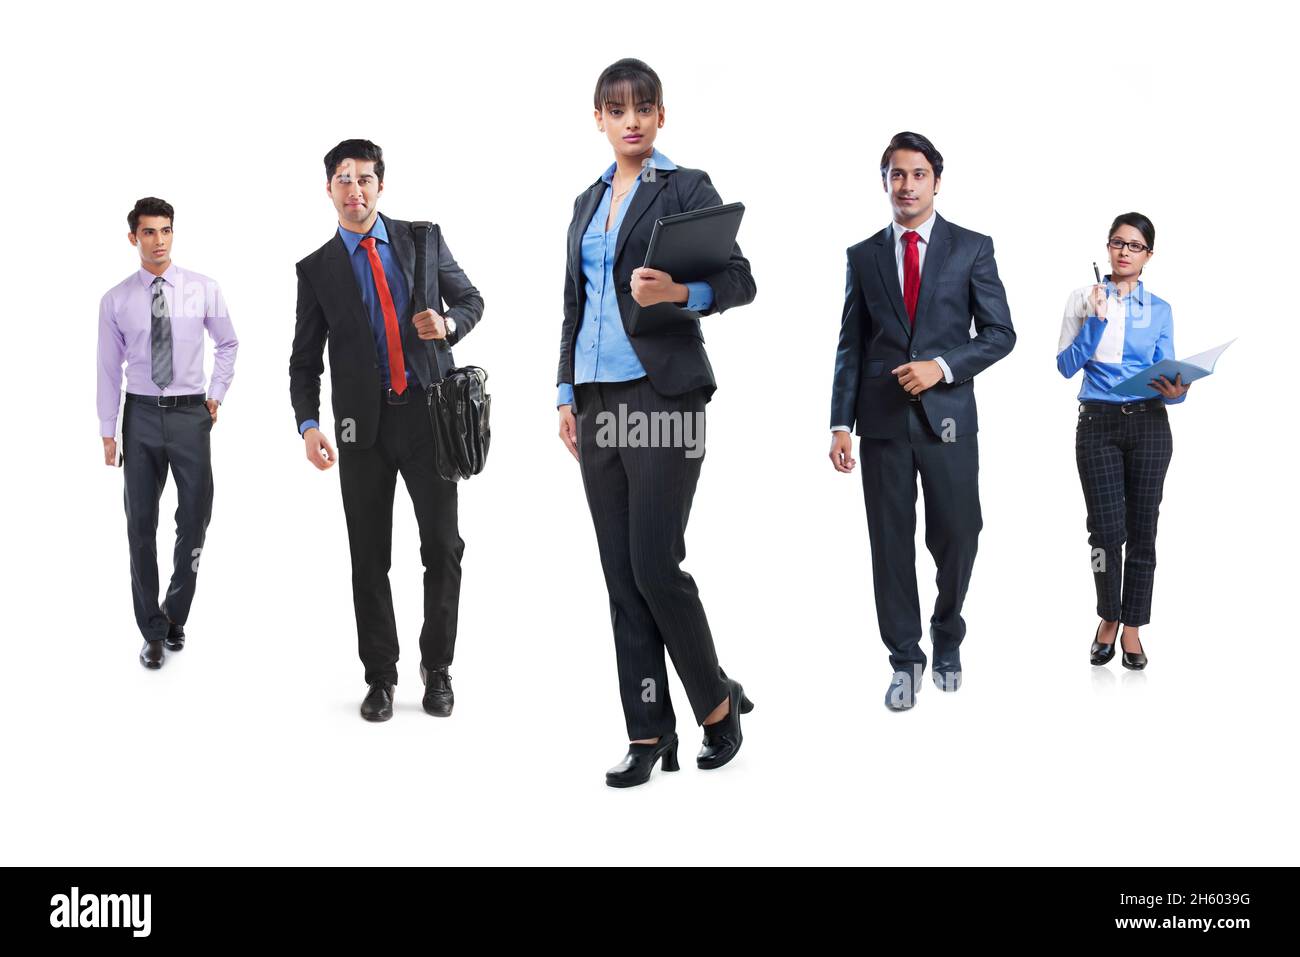 Ein Team von Unternehmensmitarbeitern, die in formeller Kleidung vor weißem Hintergrund in sozialer Distanz stehen. Stockfoto